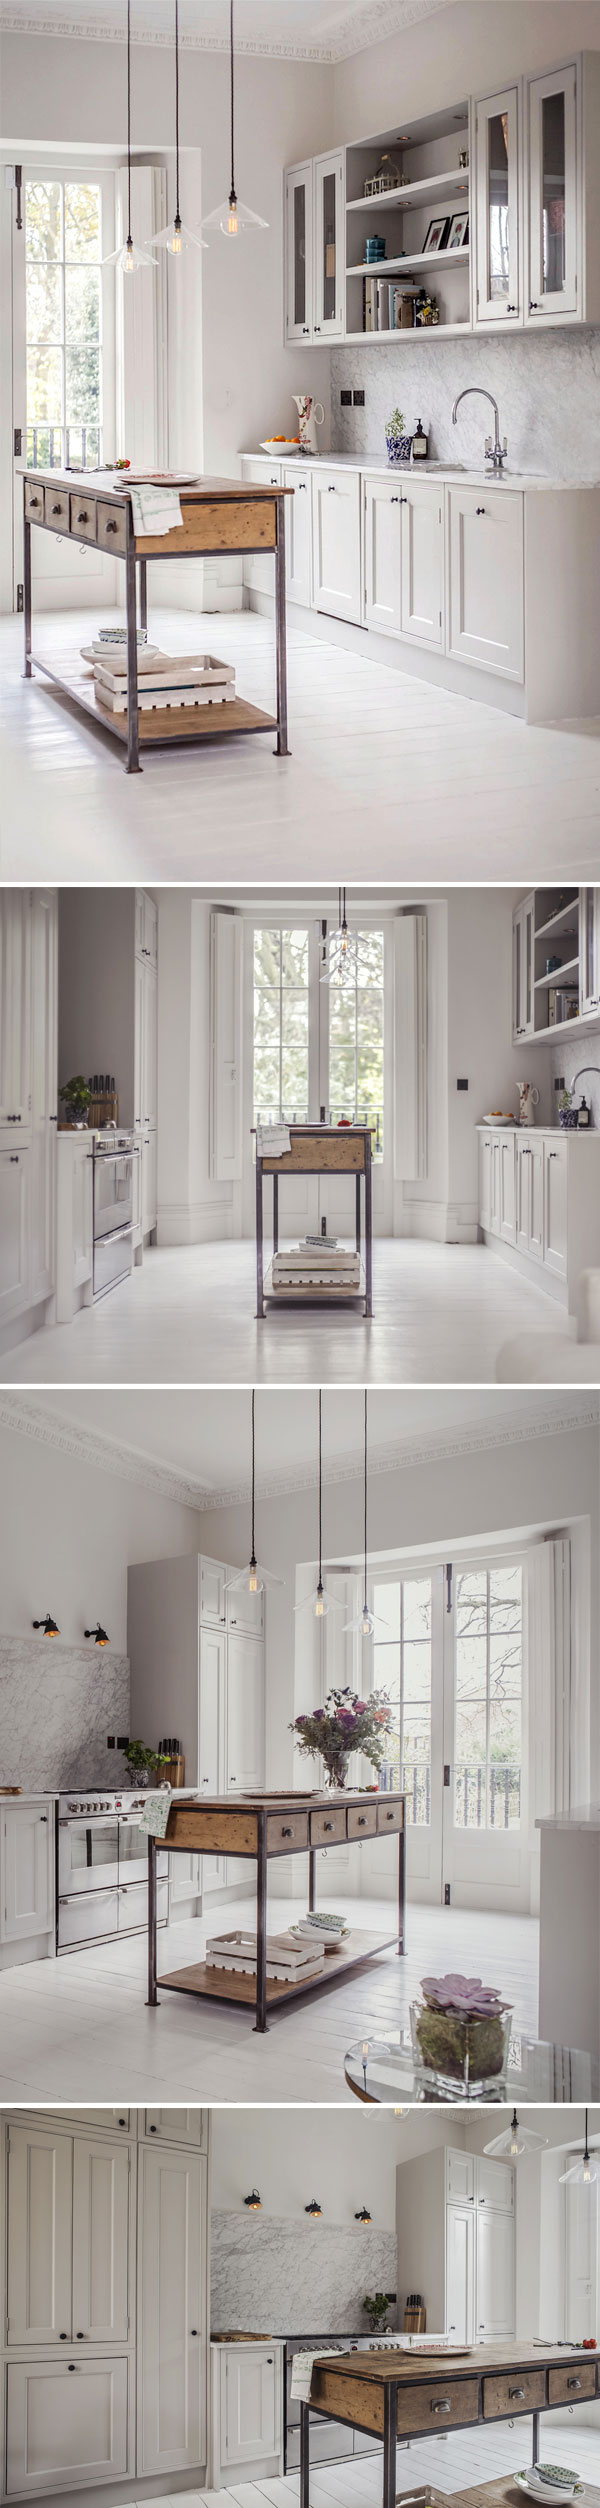 Uma cozinha linda e neutra | Design by Compass & Rose, photos by Alexis Hamilton